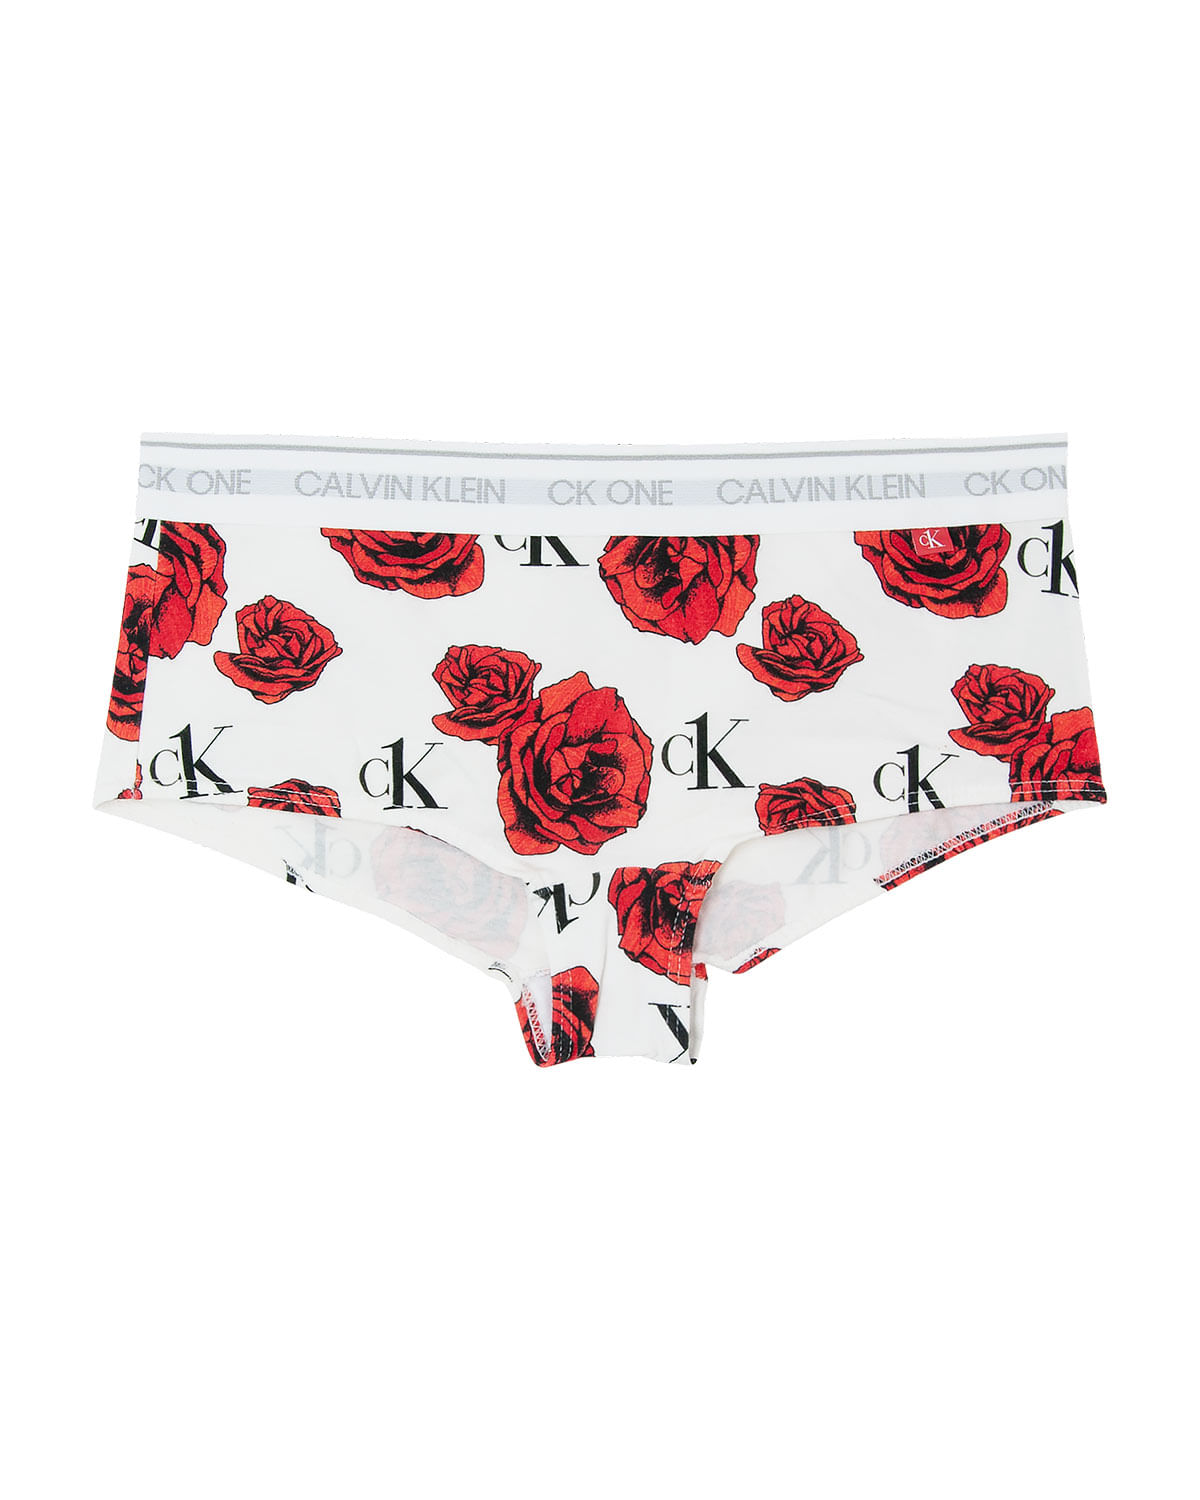 Calcinha Calvin Klein Underwear Boxer Logo Branca - Compre Agora